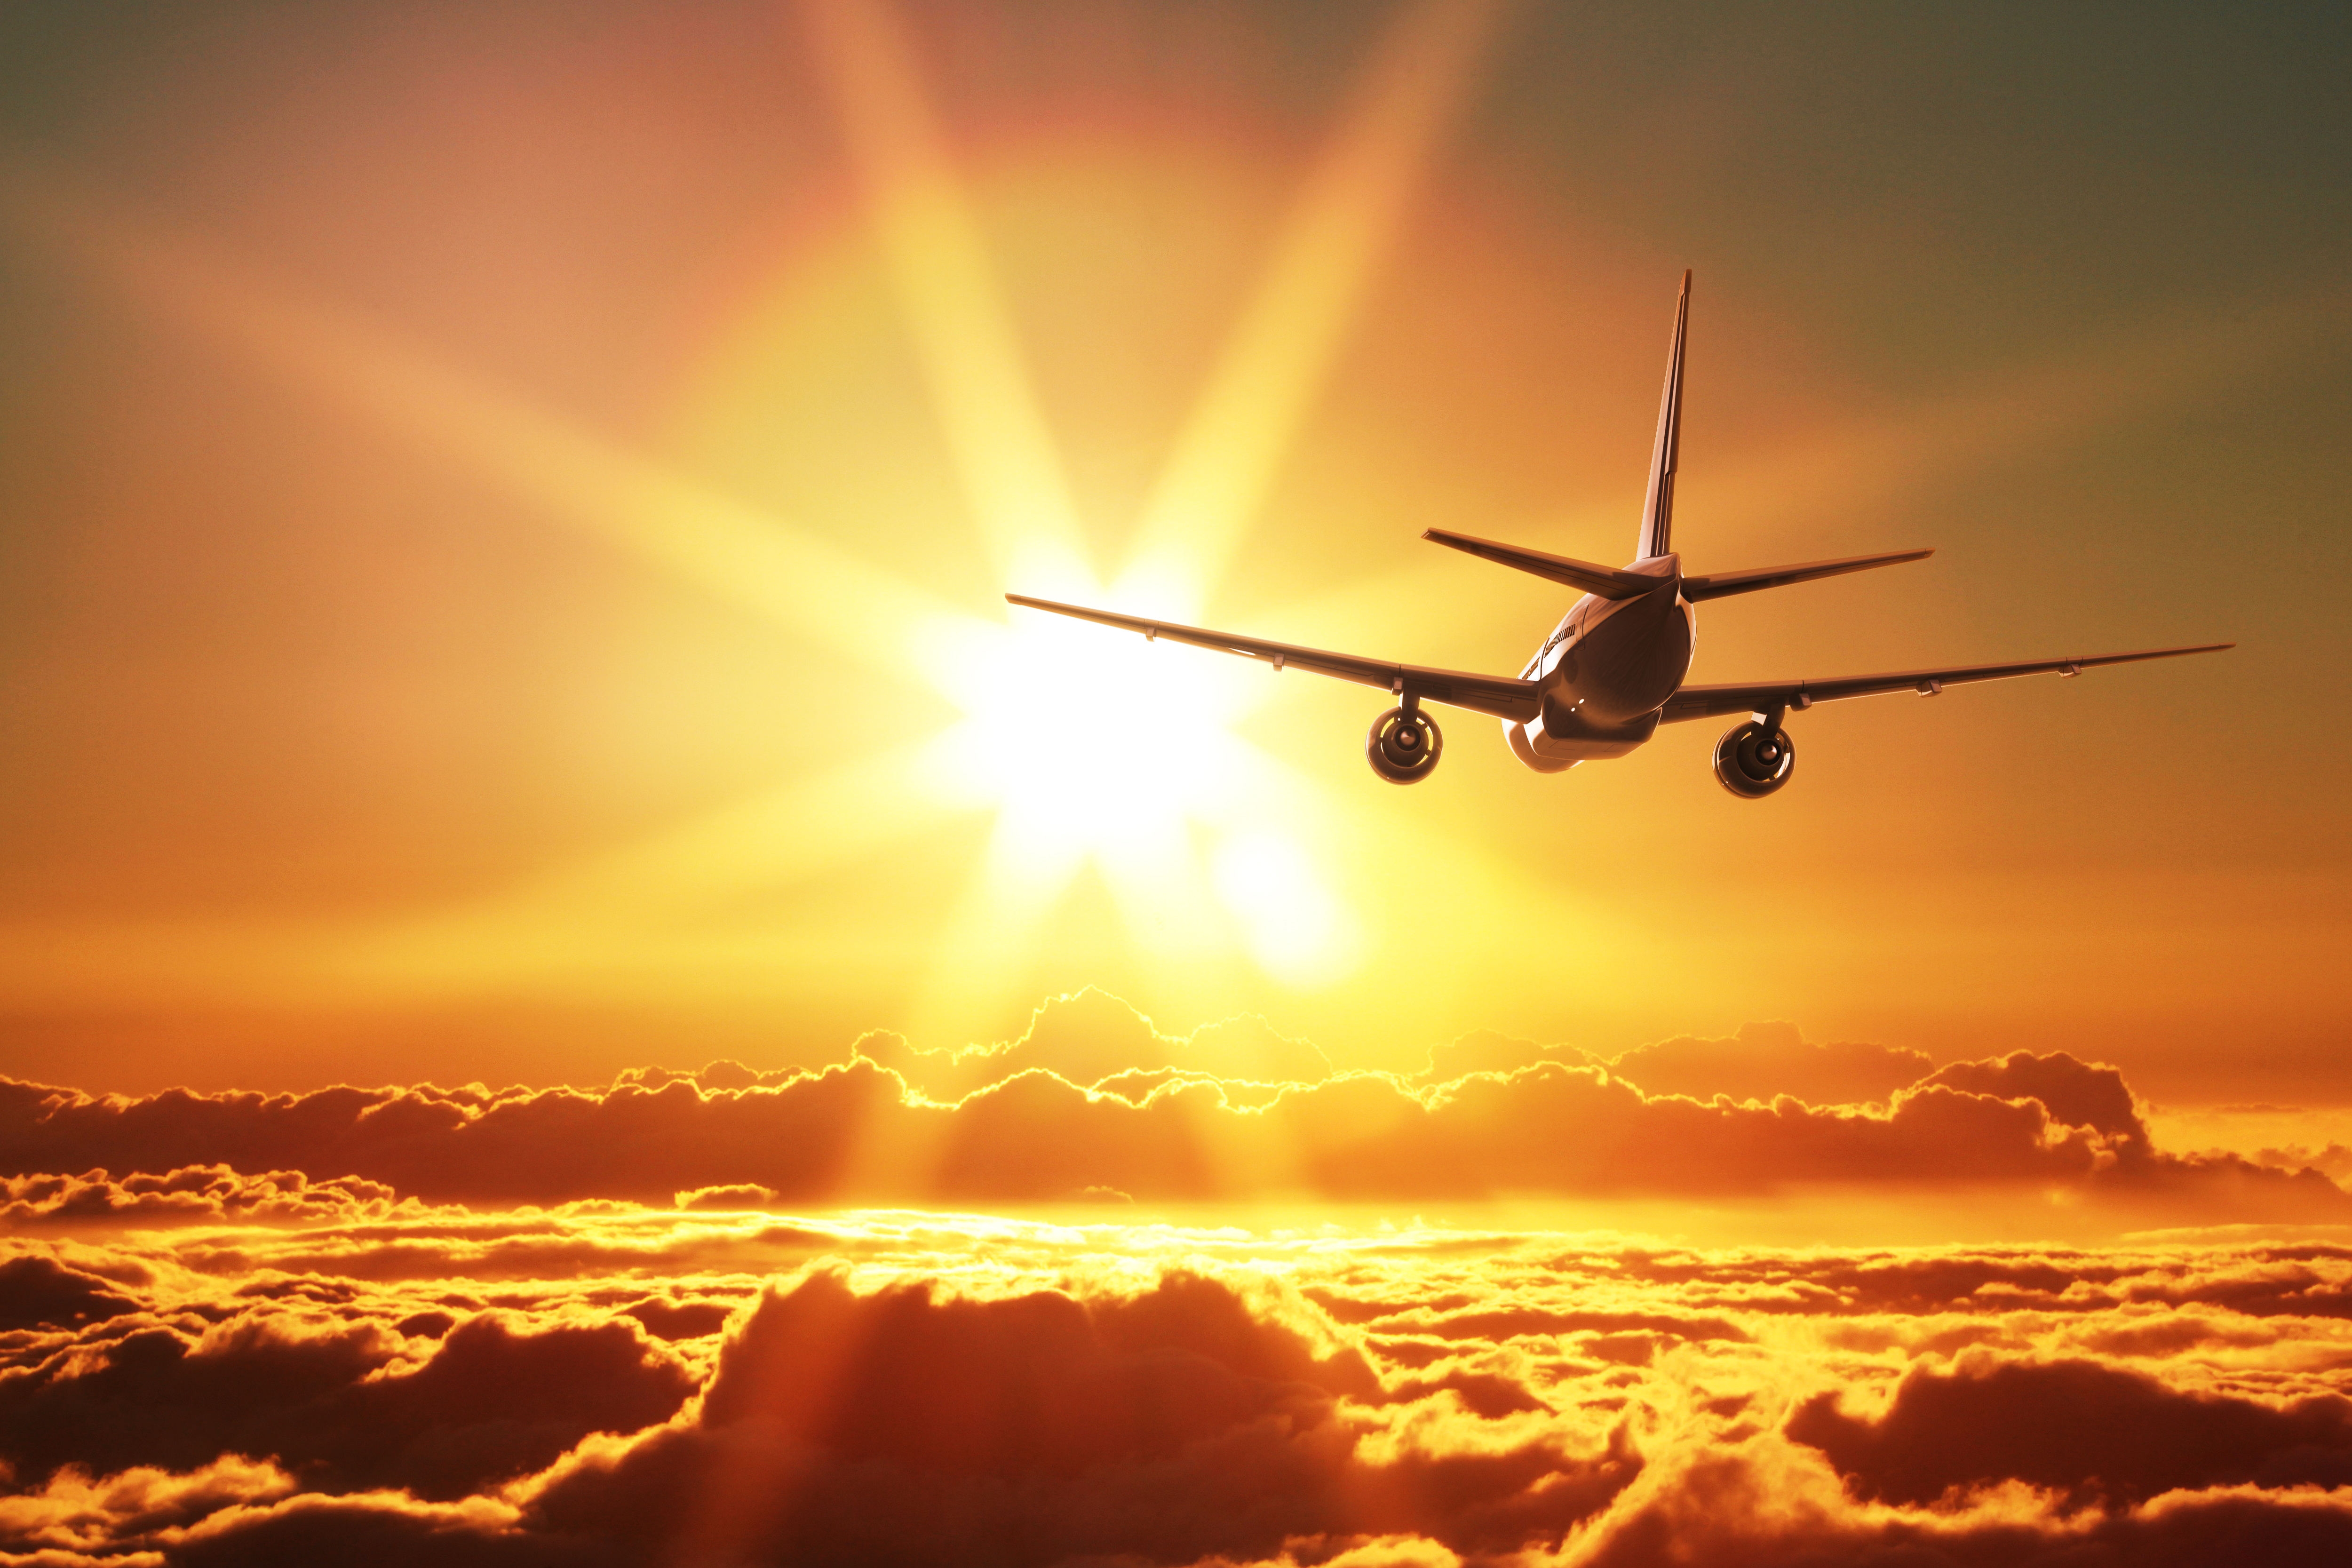 vehicles, aircraft, cloud, passenger plane, sky, sun, sunbeam